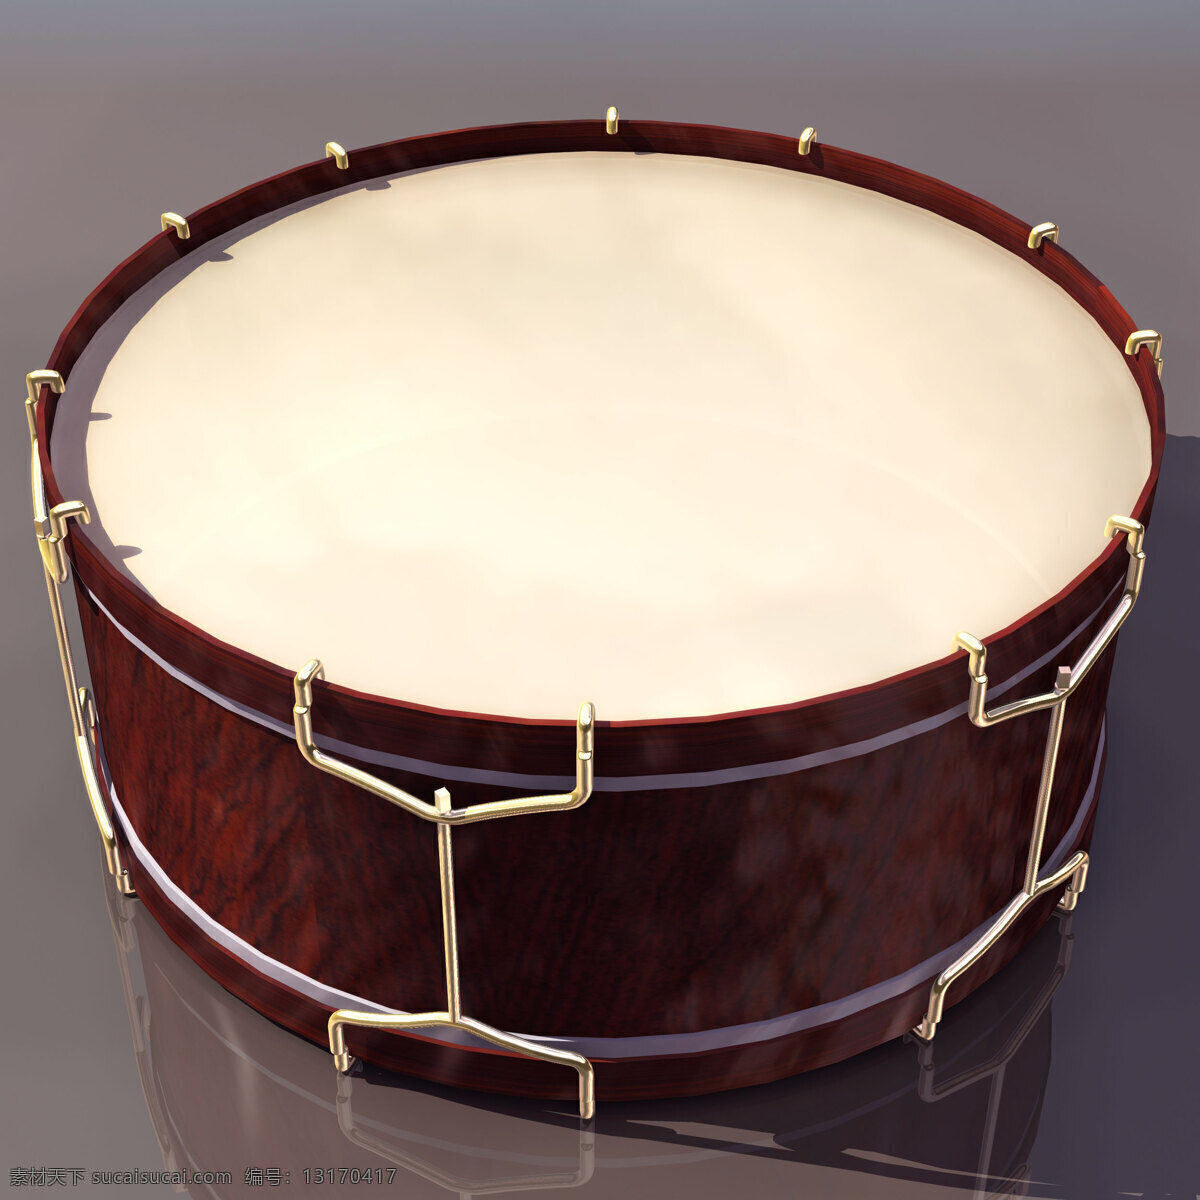 大鼓 乐器 模型 tambor 文化用品 大鼓乐器模型 乐器模型 3d模型素材 电器模型